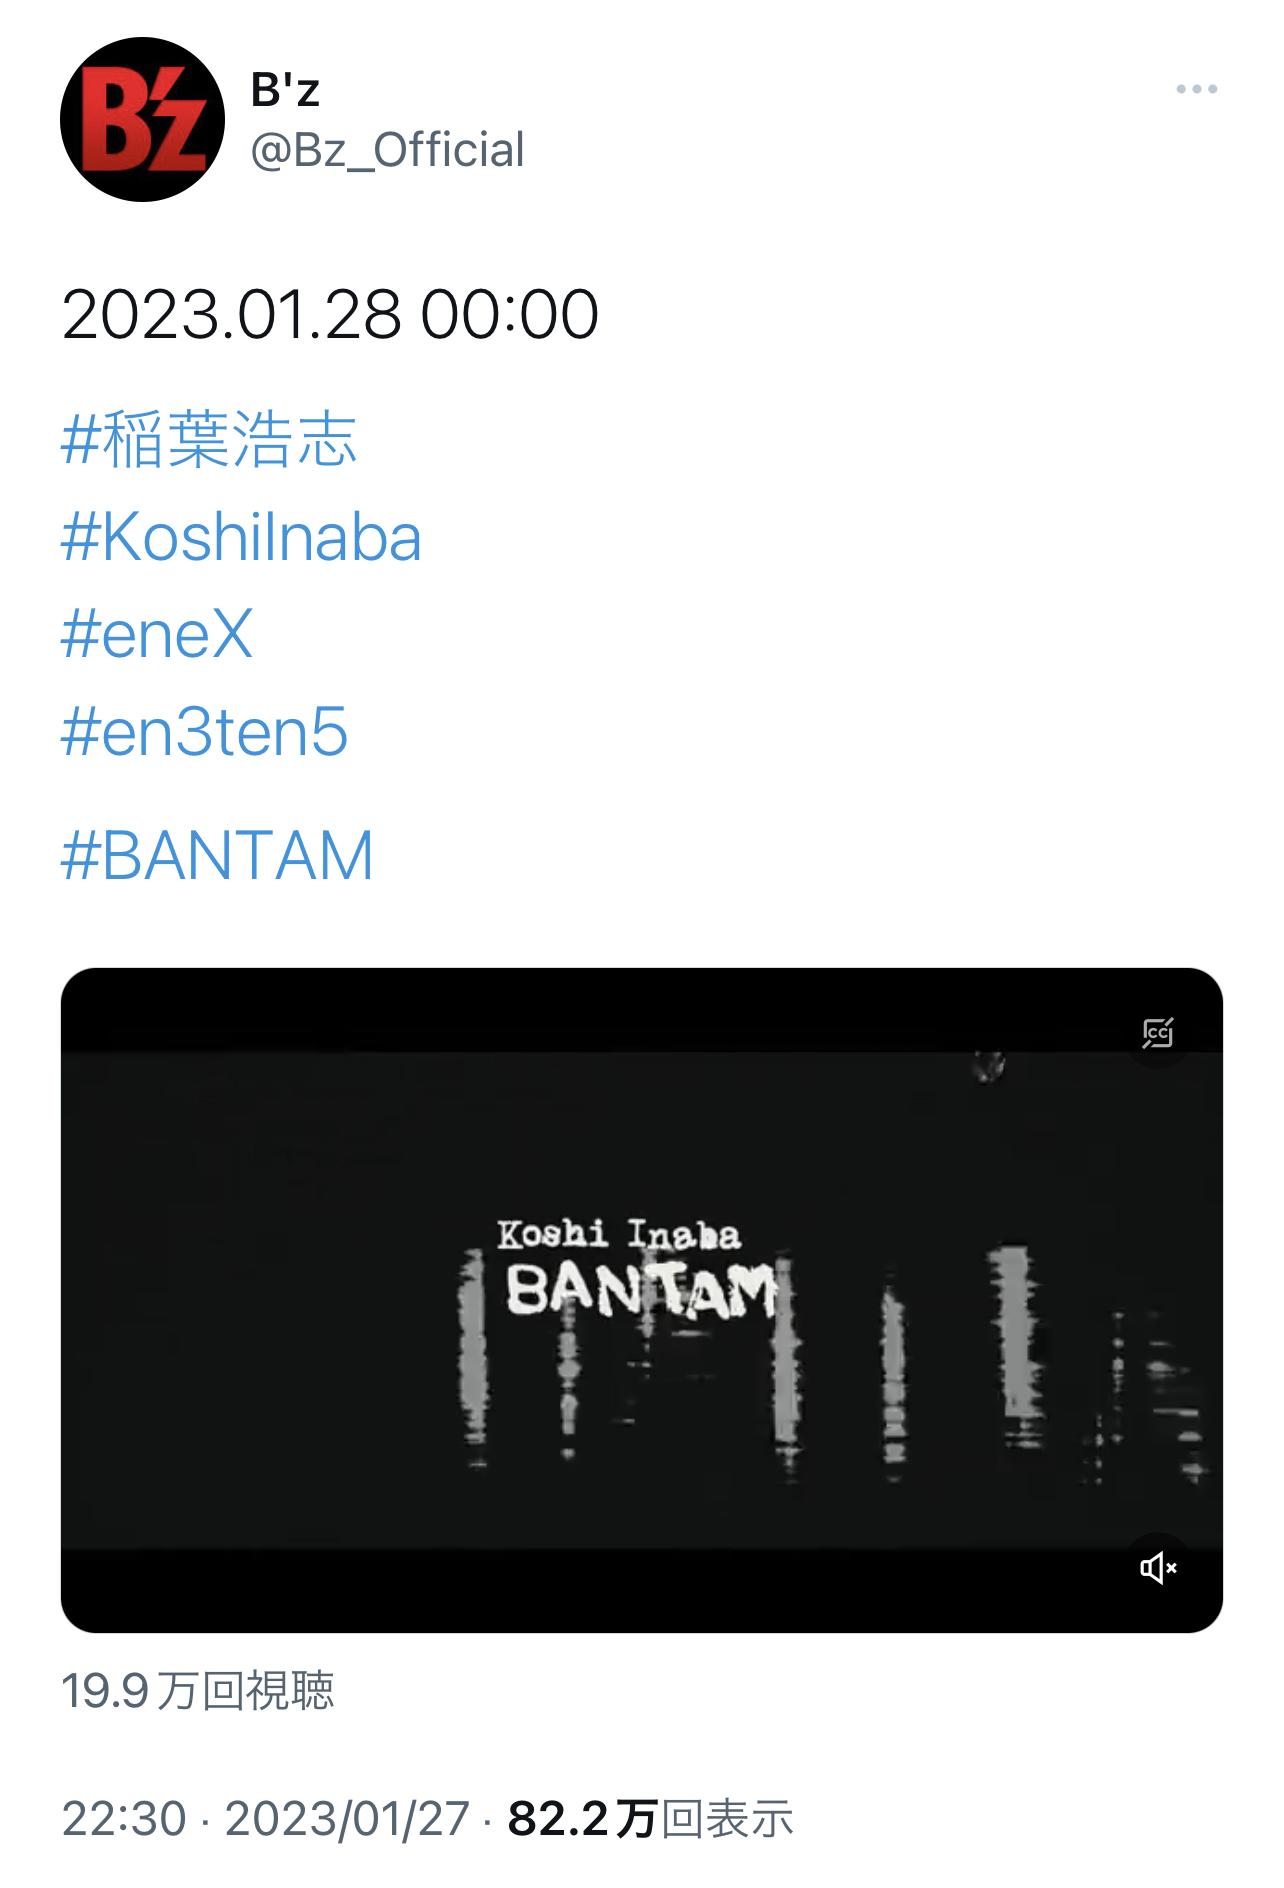 稲葉浩志「BANTAM」を告知するB'z公式Twitterの投稿